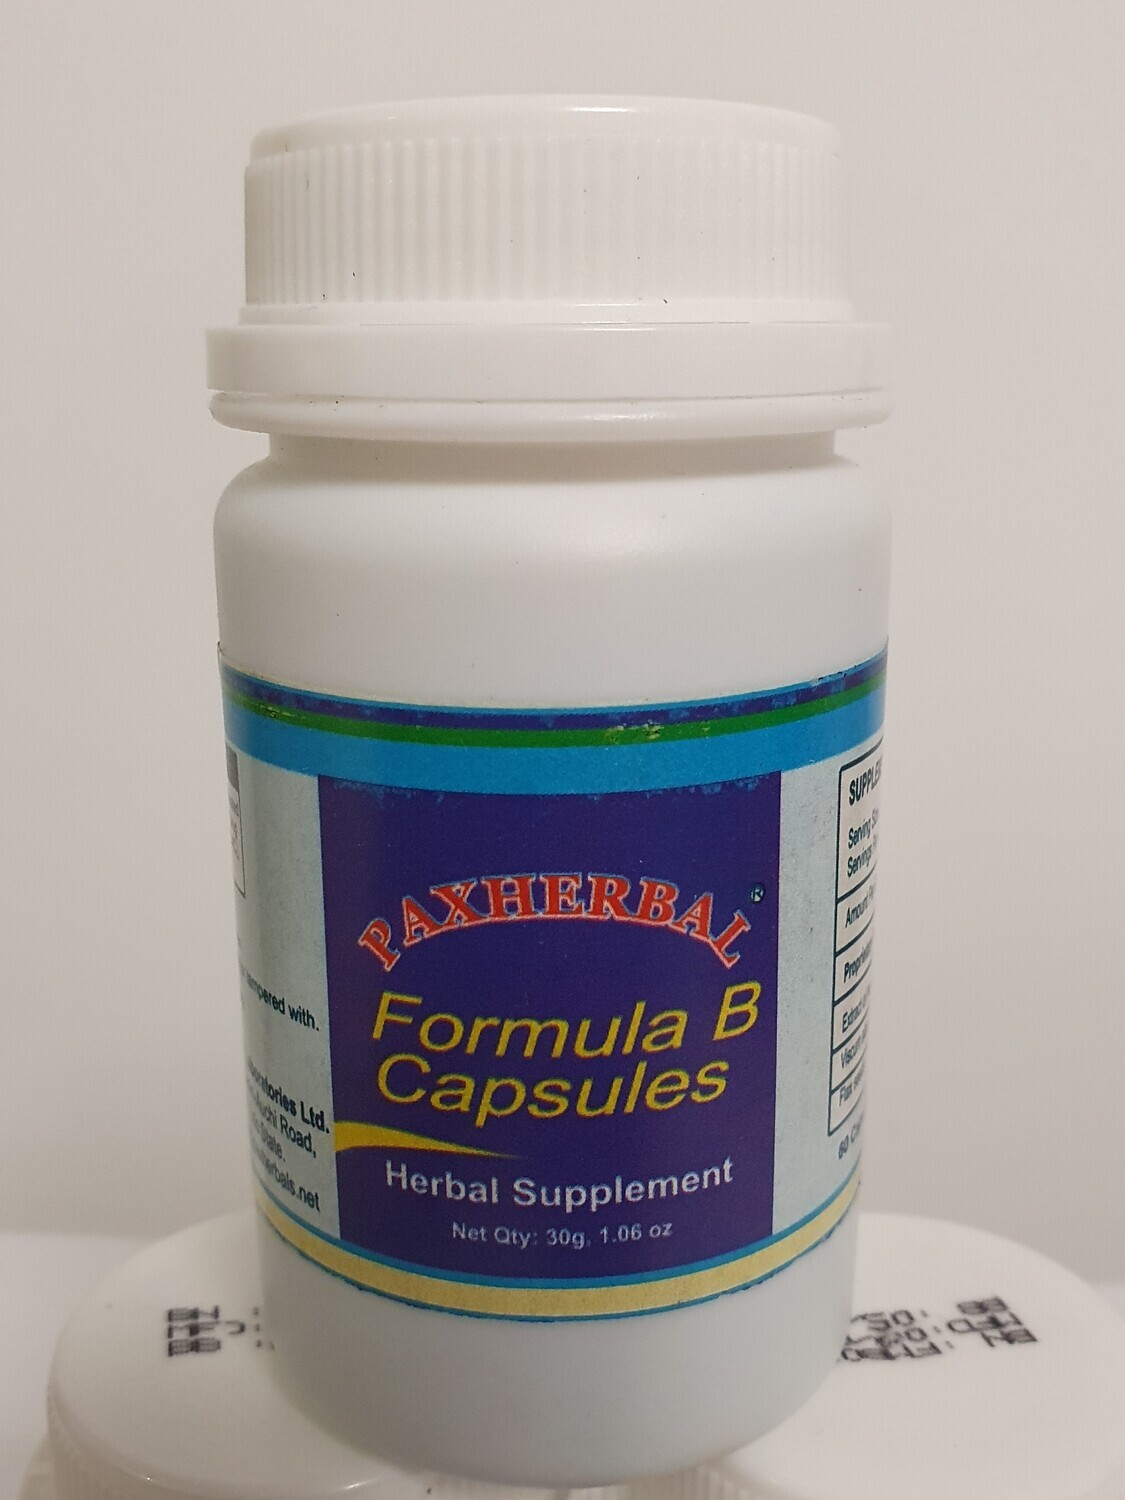 Paxherbal Formula B Capsules- high blood pressure.